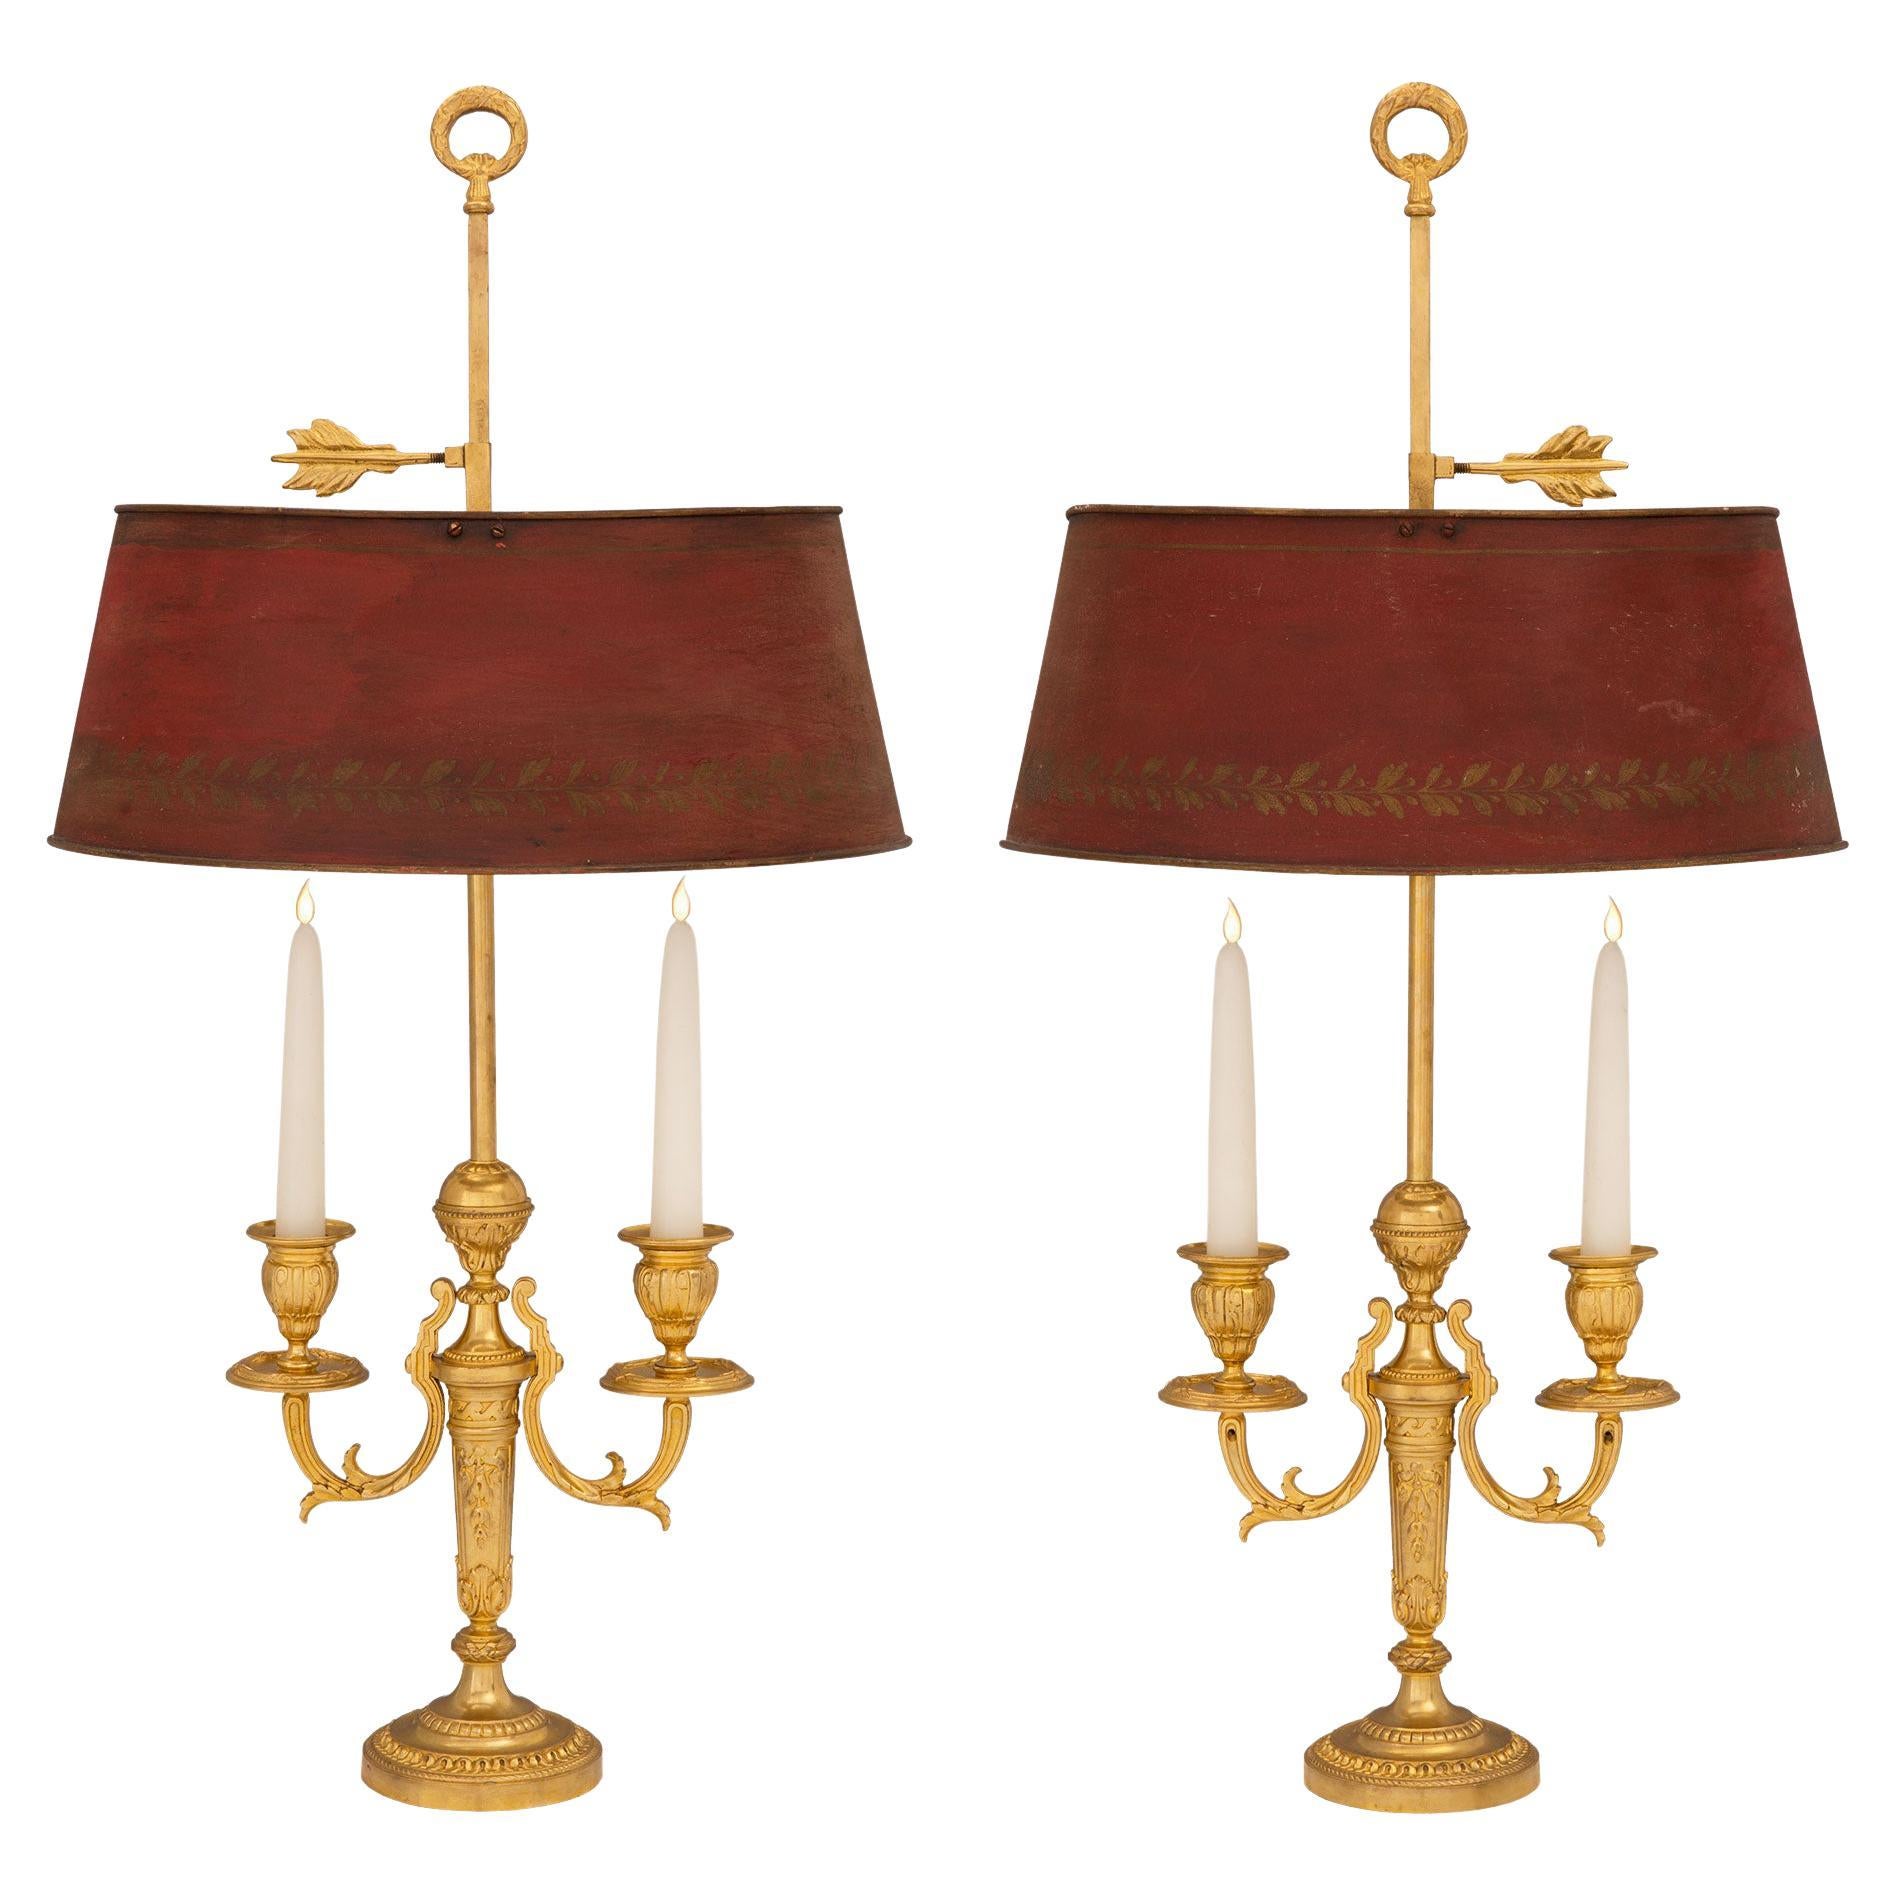 Paire de lampes bouillotte en bronze doré de style Louis XVI du 19ème siècle français